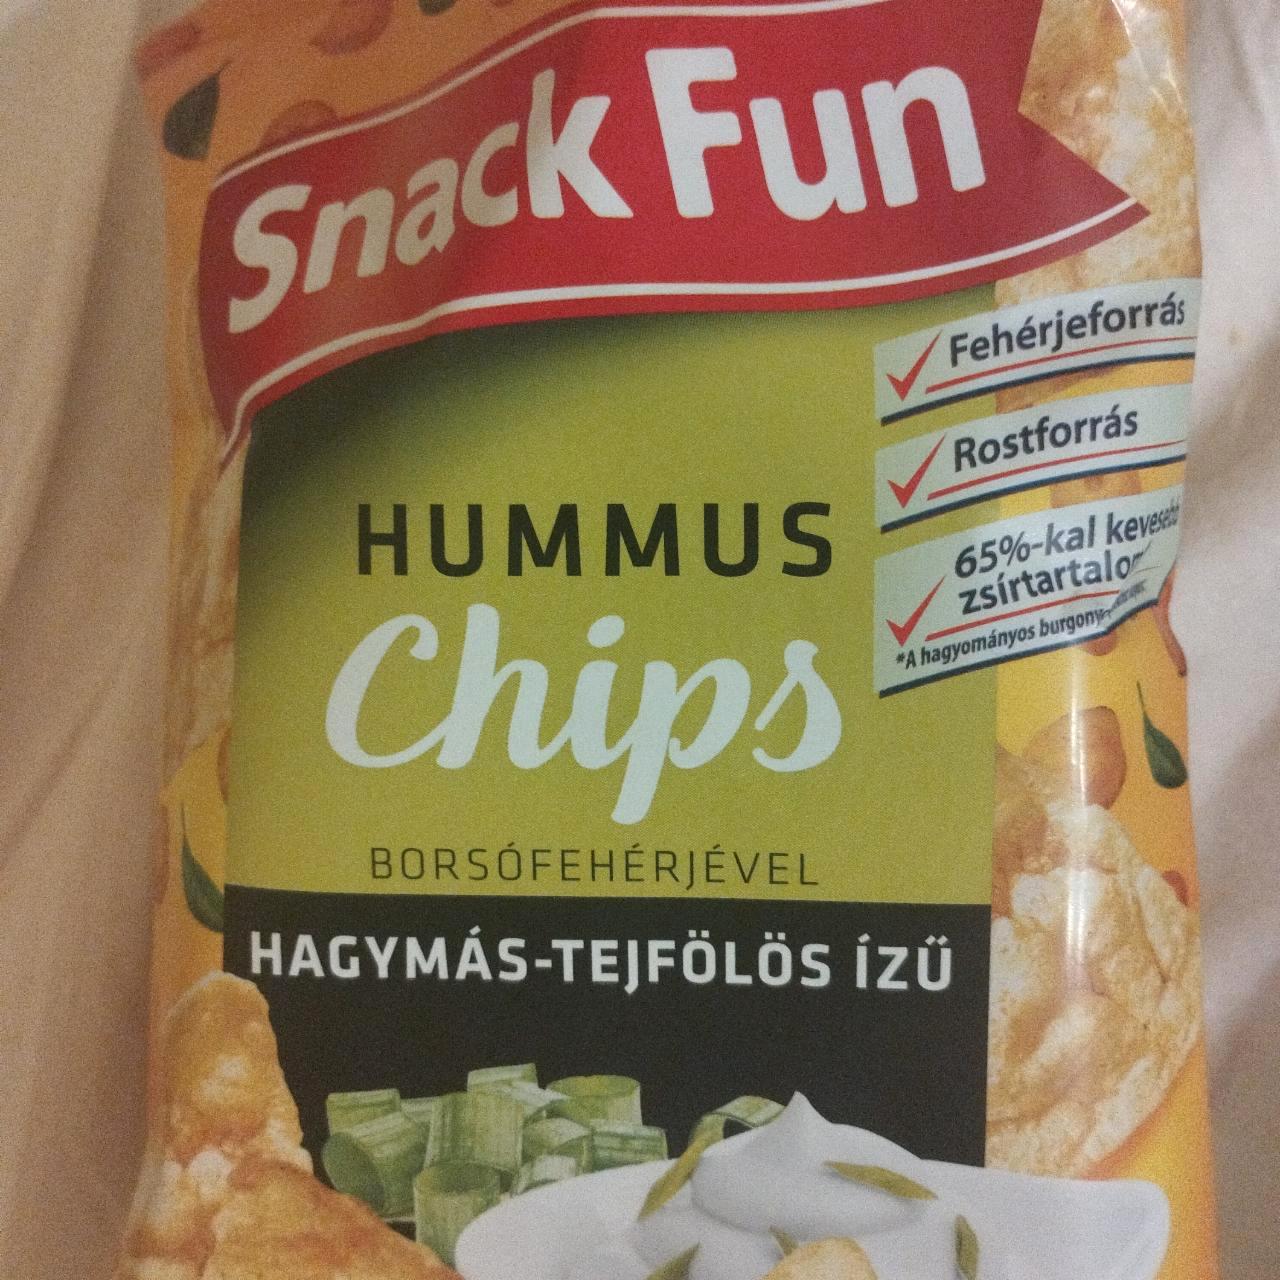 Képek - Hummus Chips Hagymás-tejfölös ízű Snack Fun